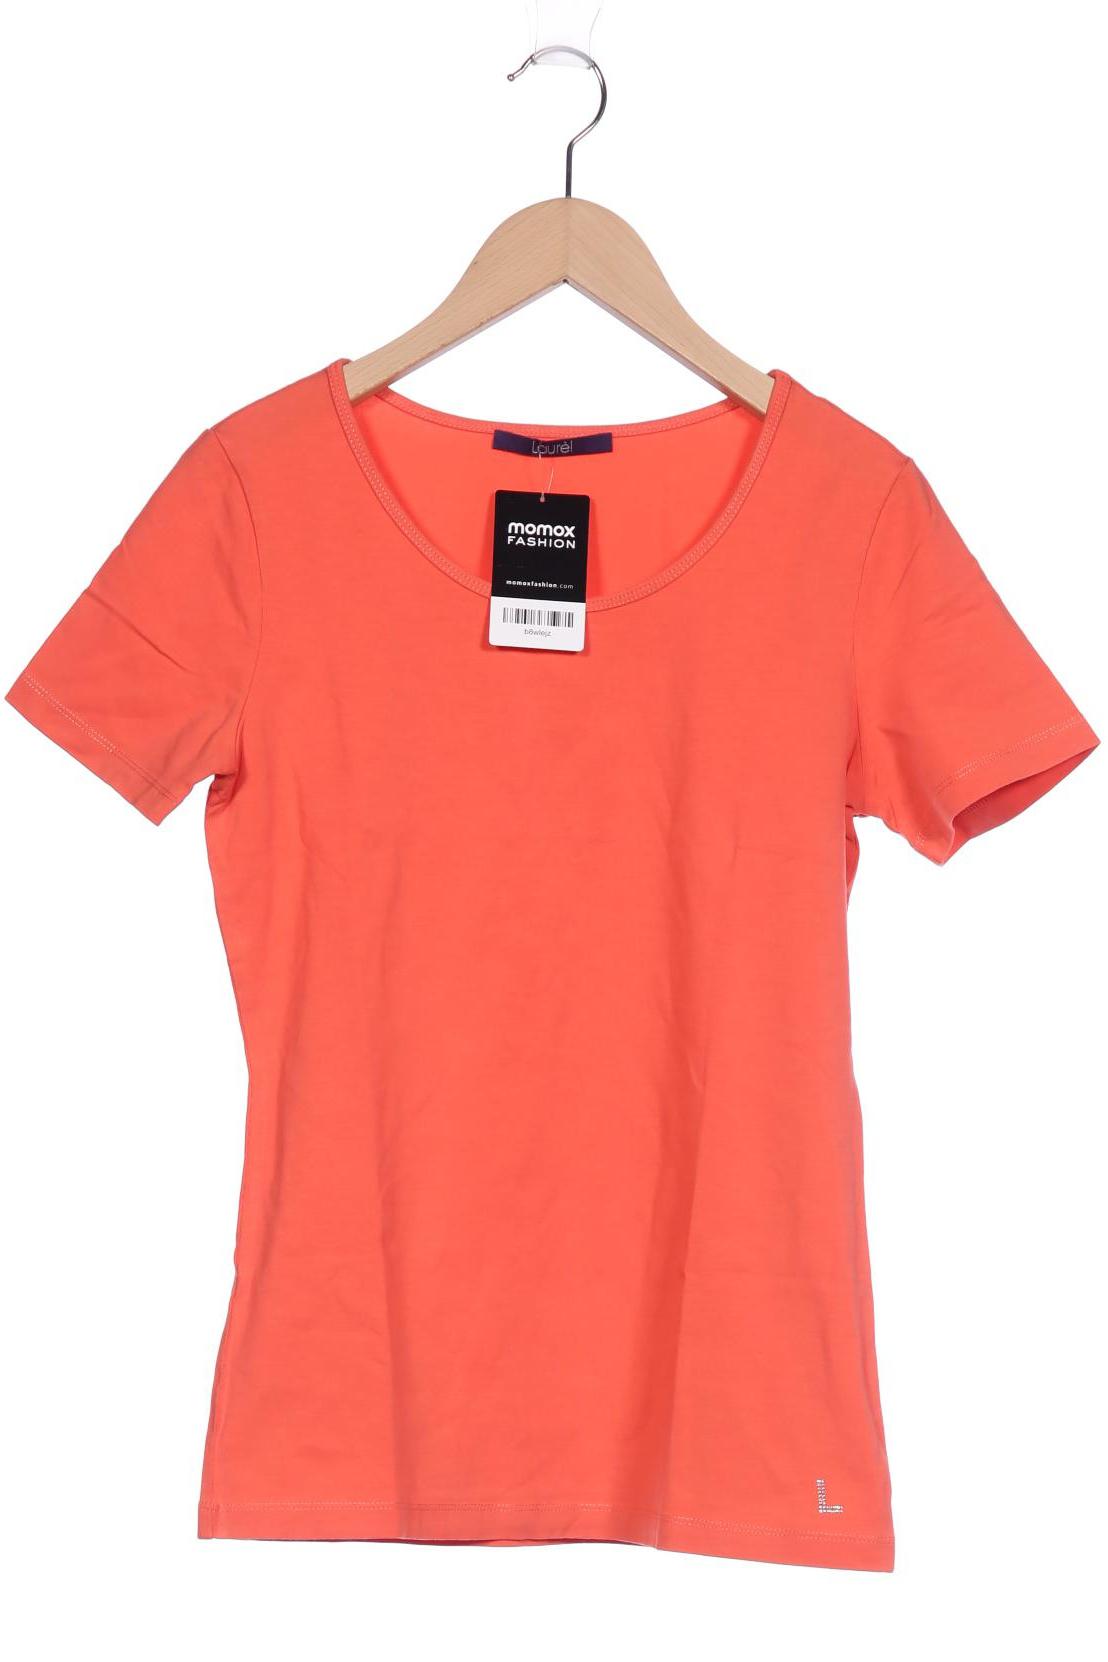 Laurel Damen T-Shirt, orange von Laurel